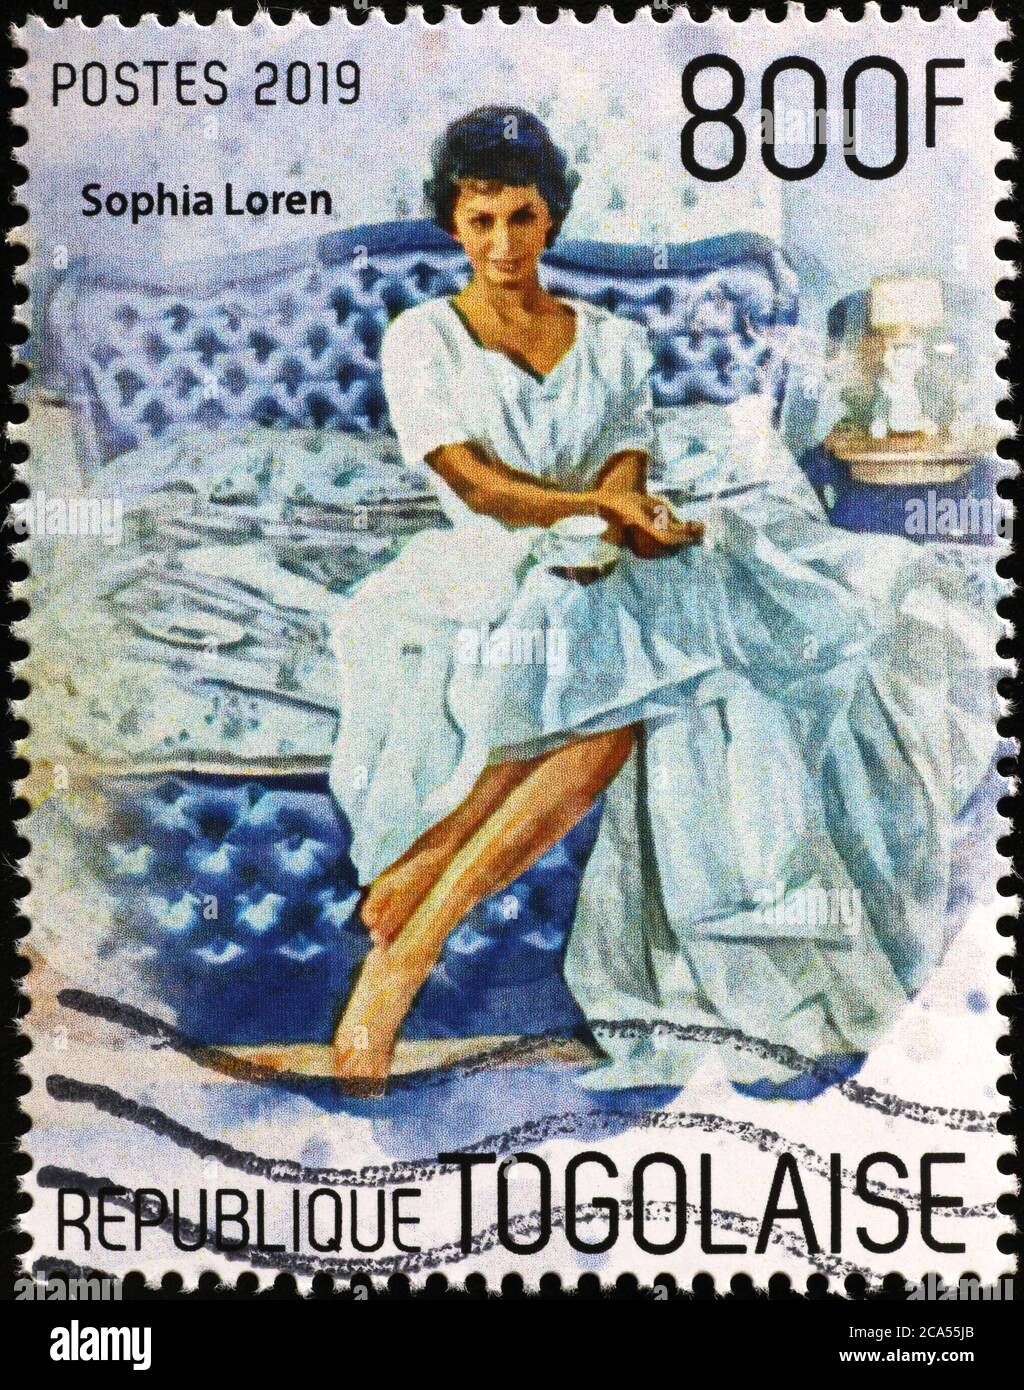 Italian actress Sofia Loren on stamp of Togo Stock Photo